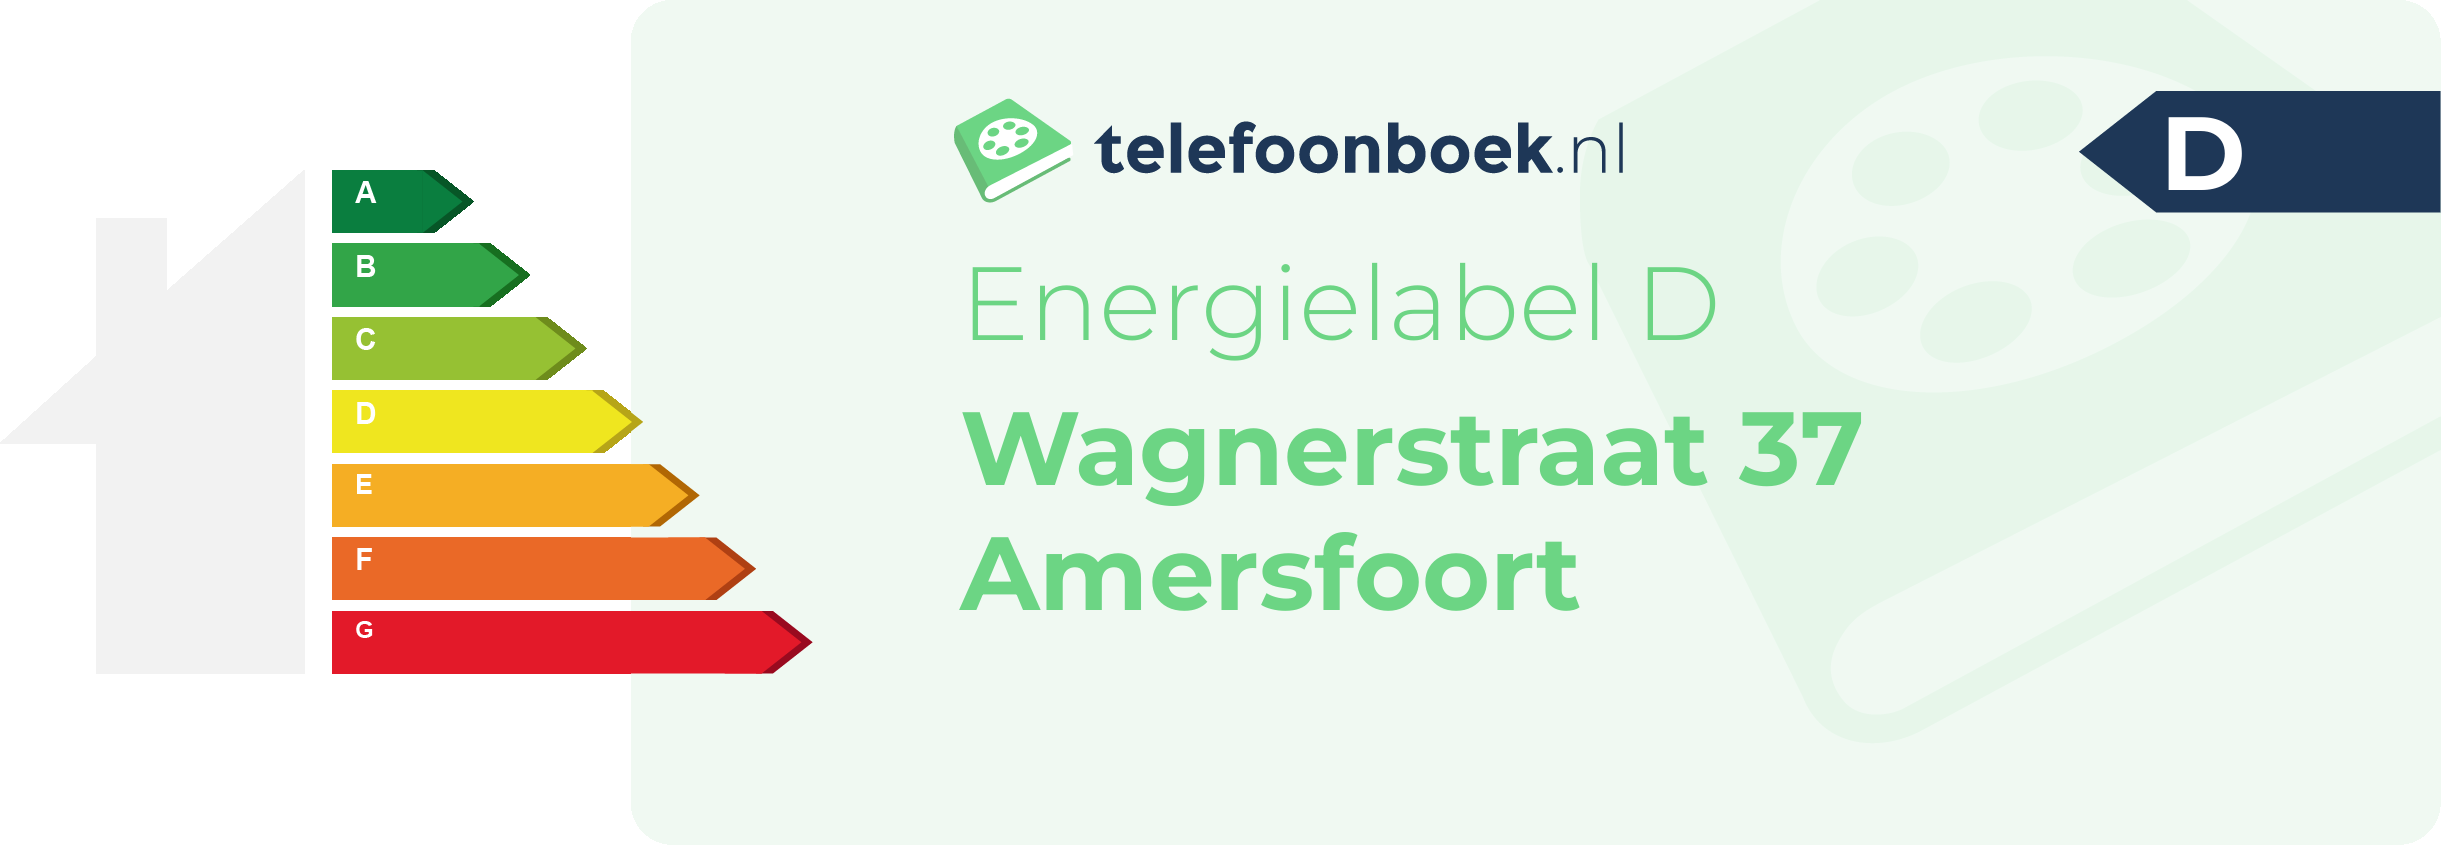 Energielabel Wagnerstraat 37 Amersfoort